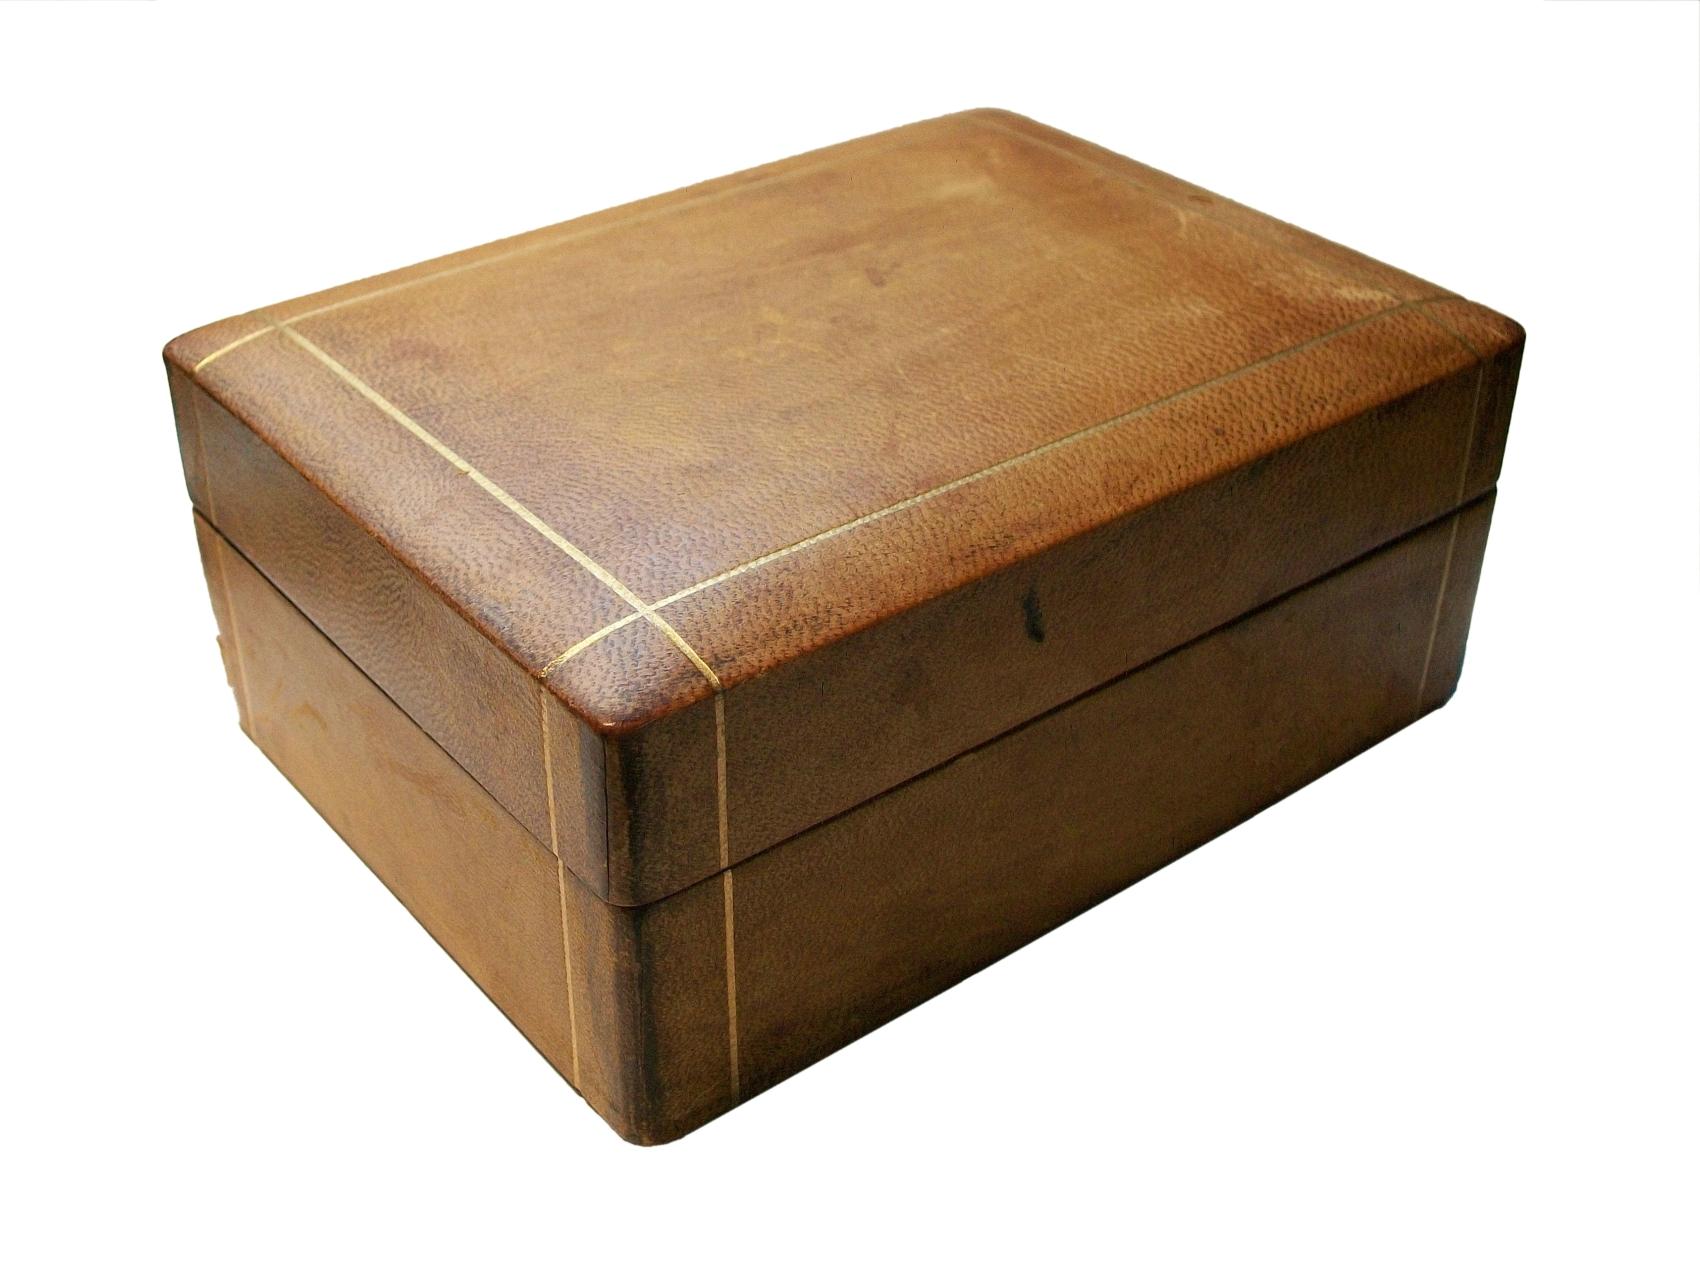 Boîte en cuir de chevreau du milieu du siècle avec détails dorés - doublée de bois - tissu moiré à la base - non signée - très léger cachet 